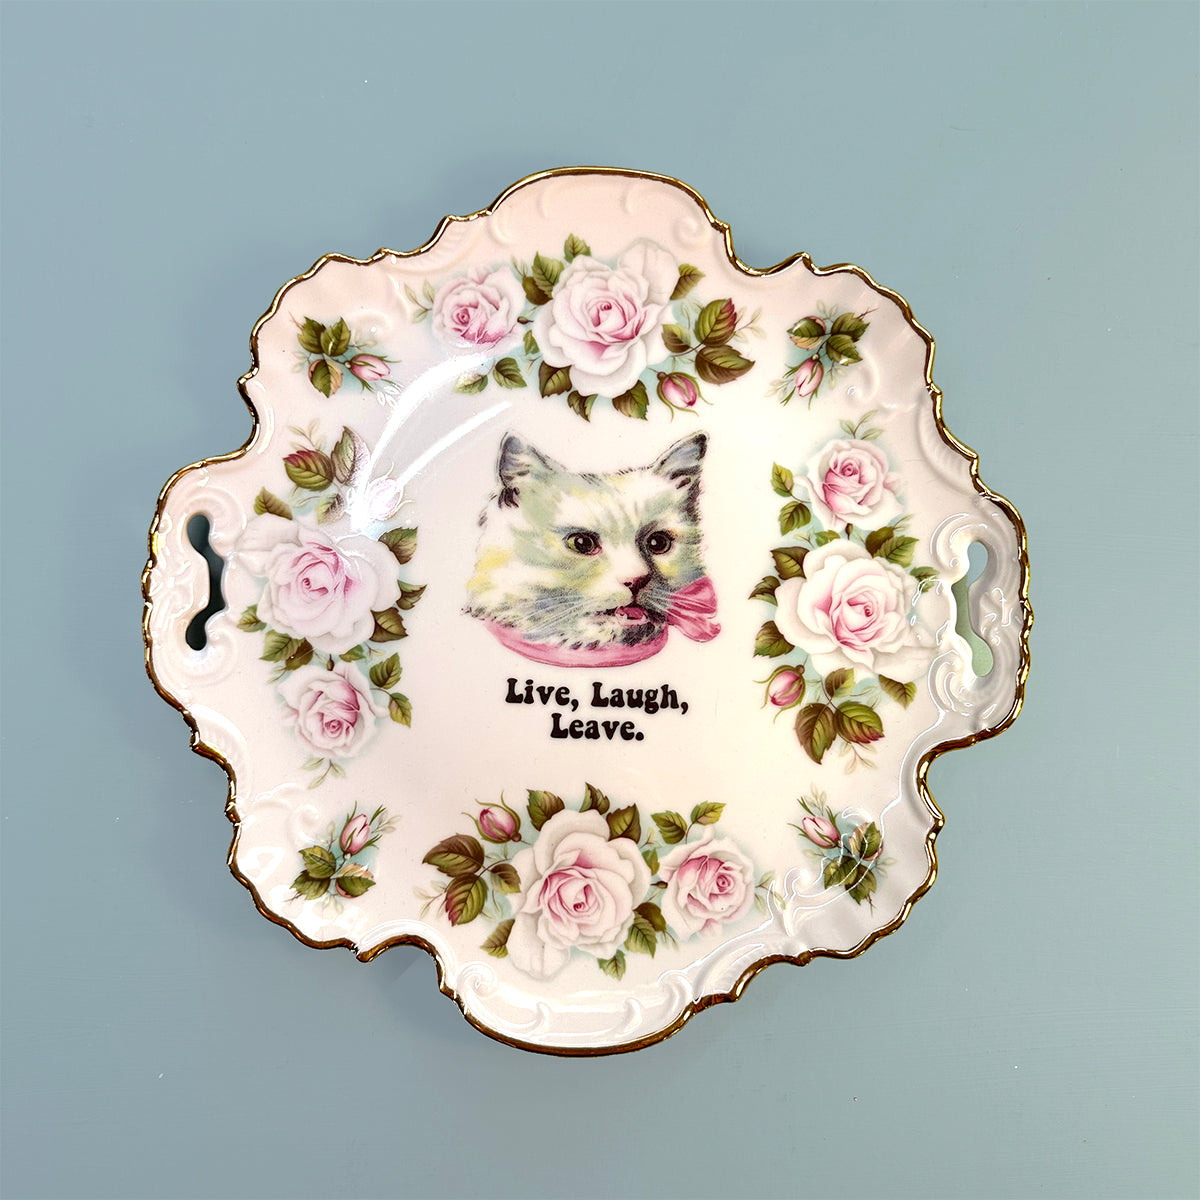 Antique Art Plate -  Cat plate - "Live, Laugh, Leave"